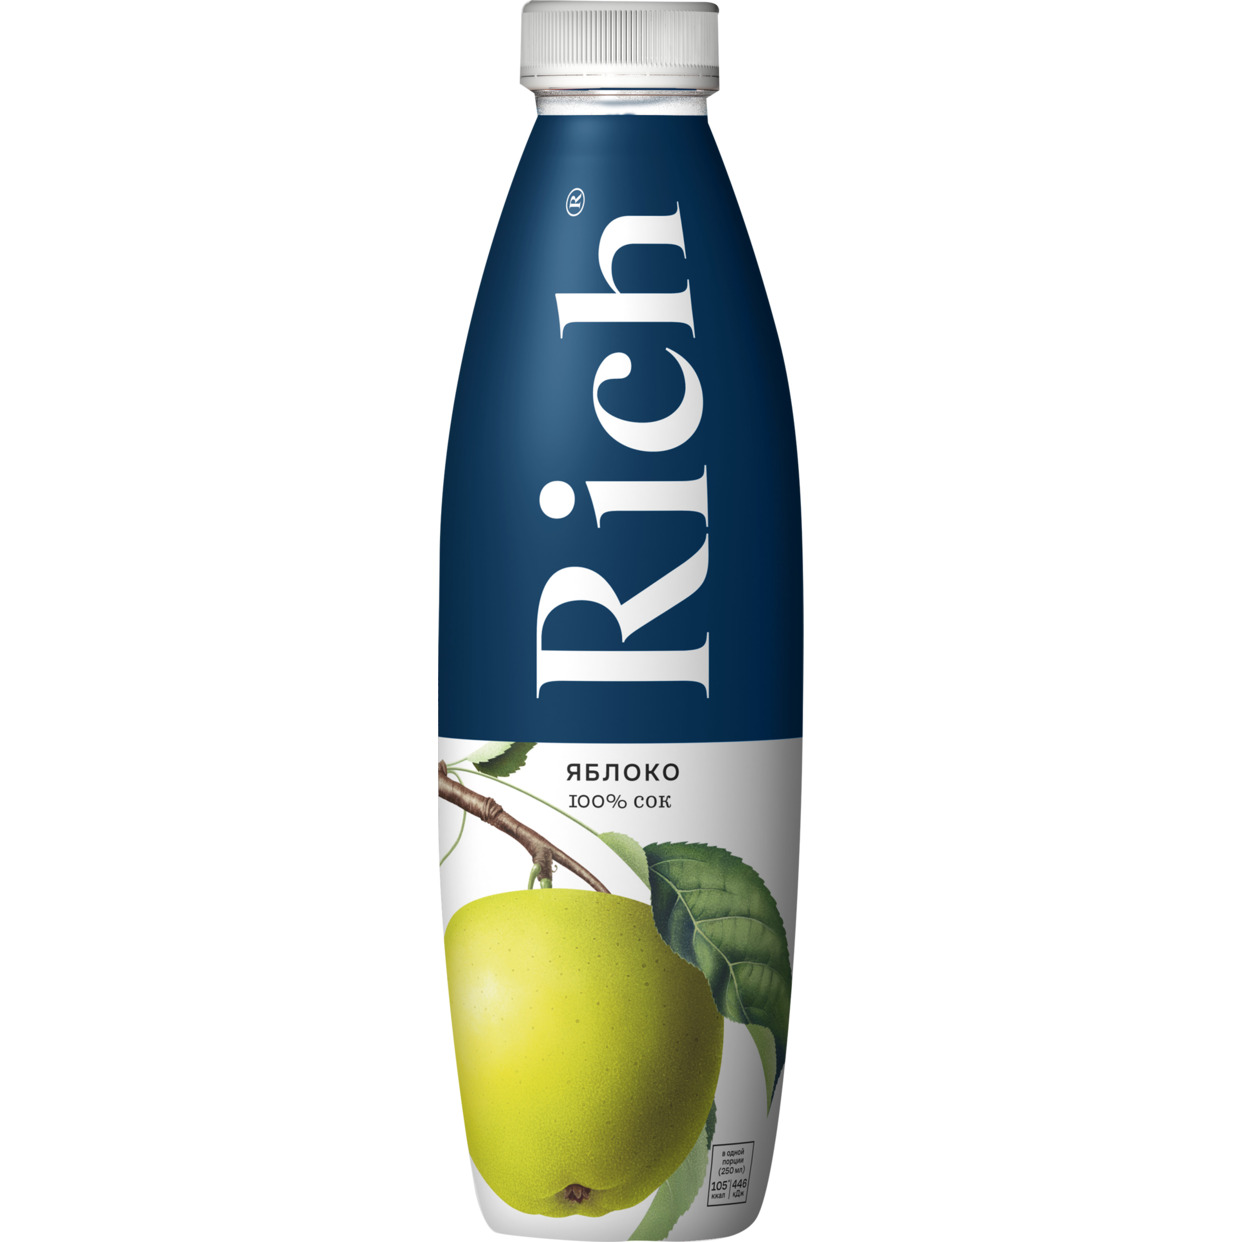 Яблочный сок Rich 0.9л по акции в Пятерочке